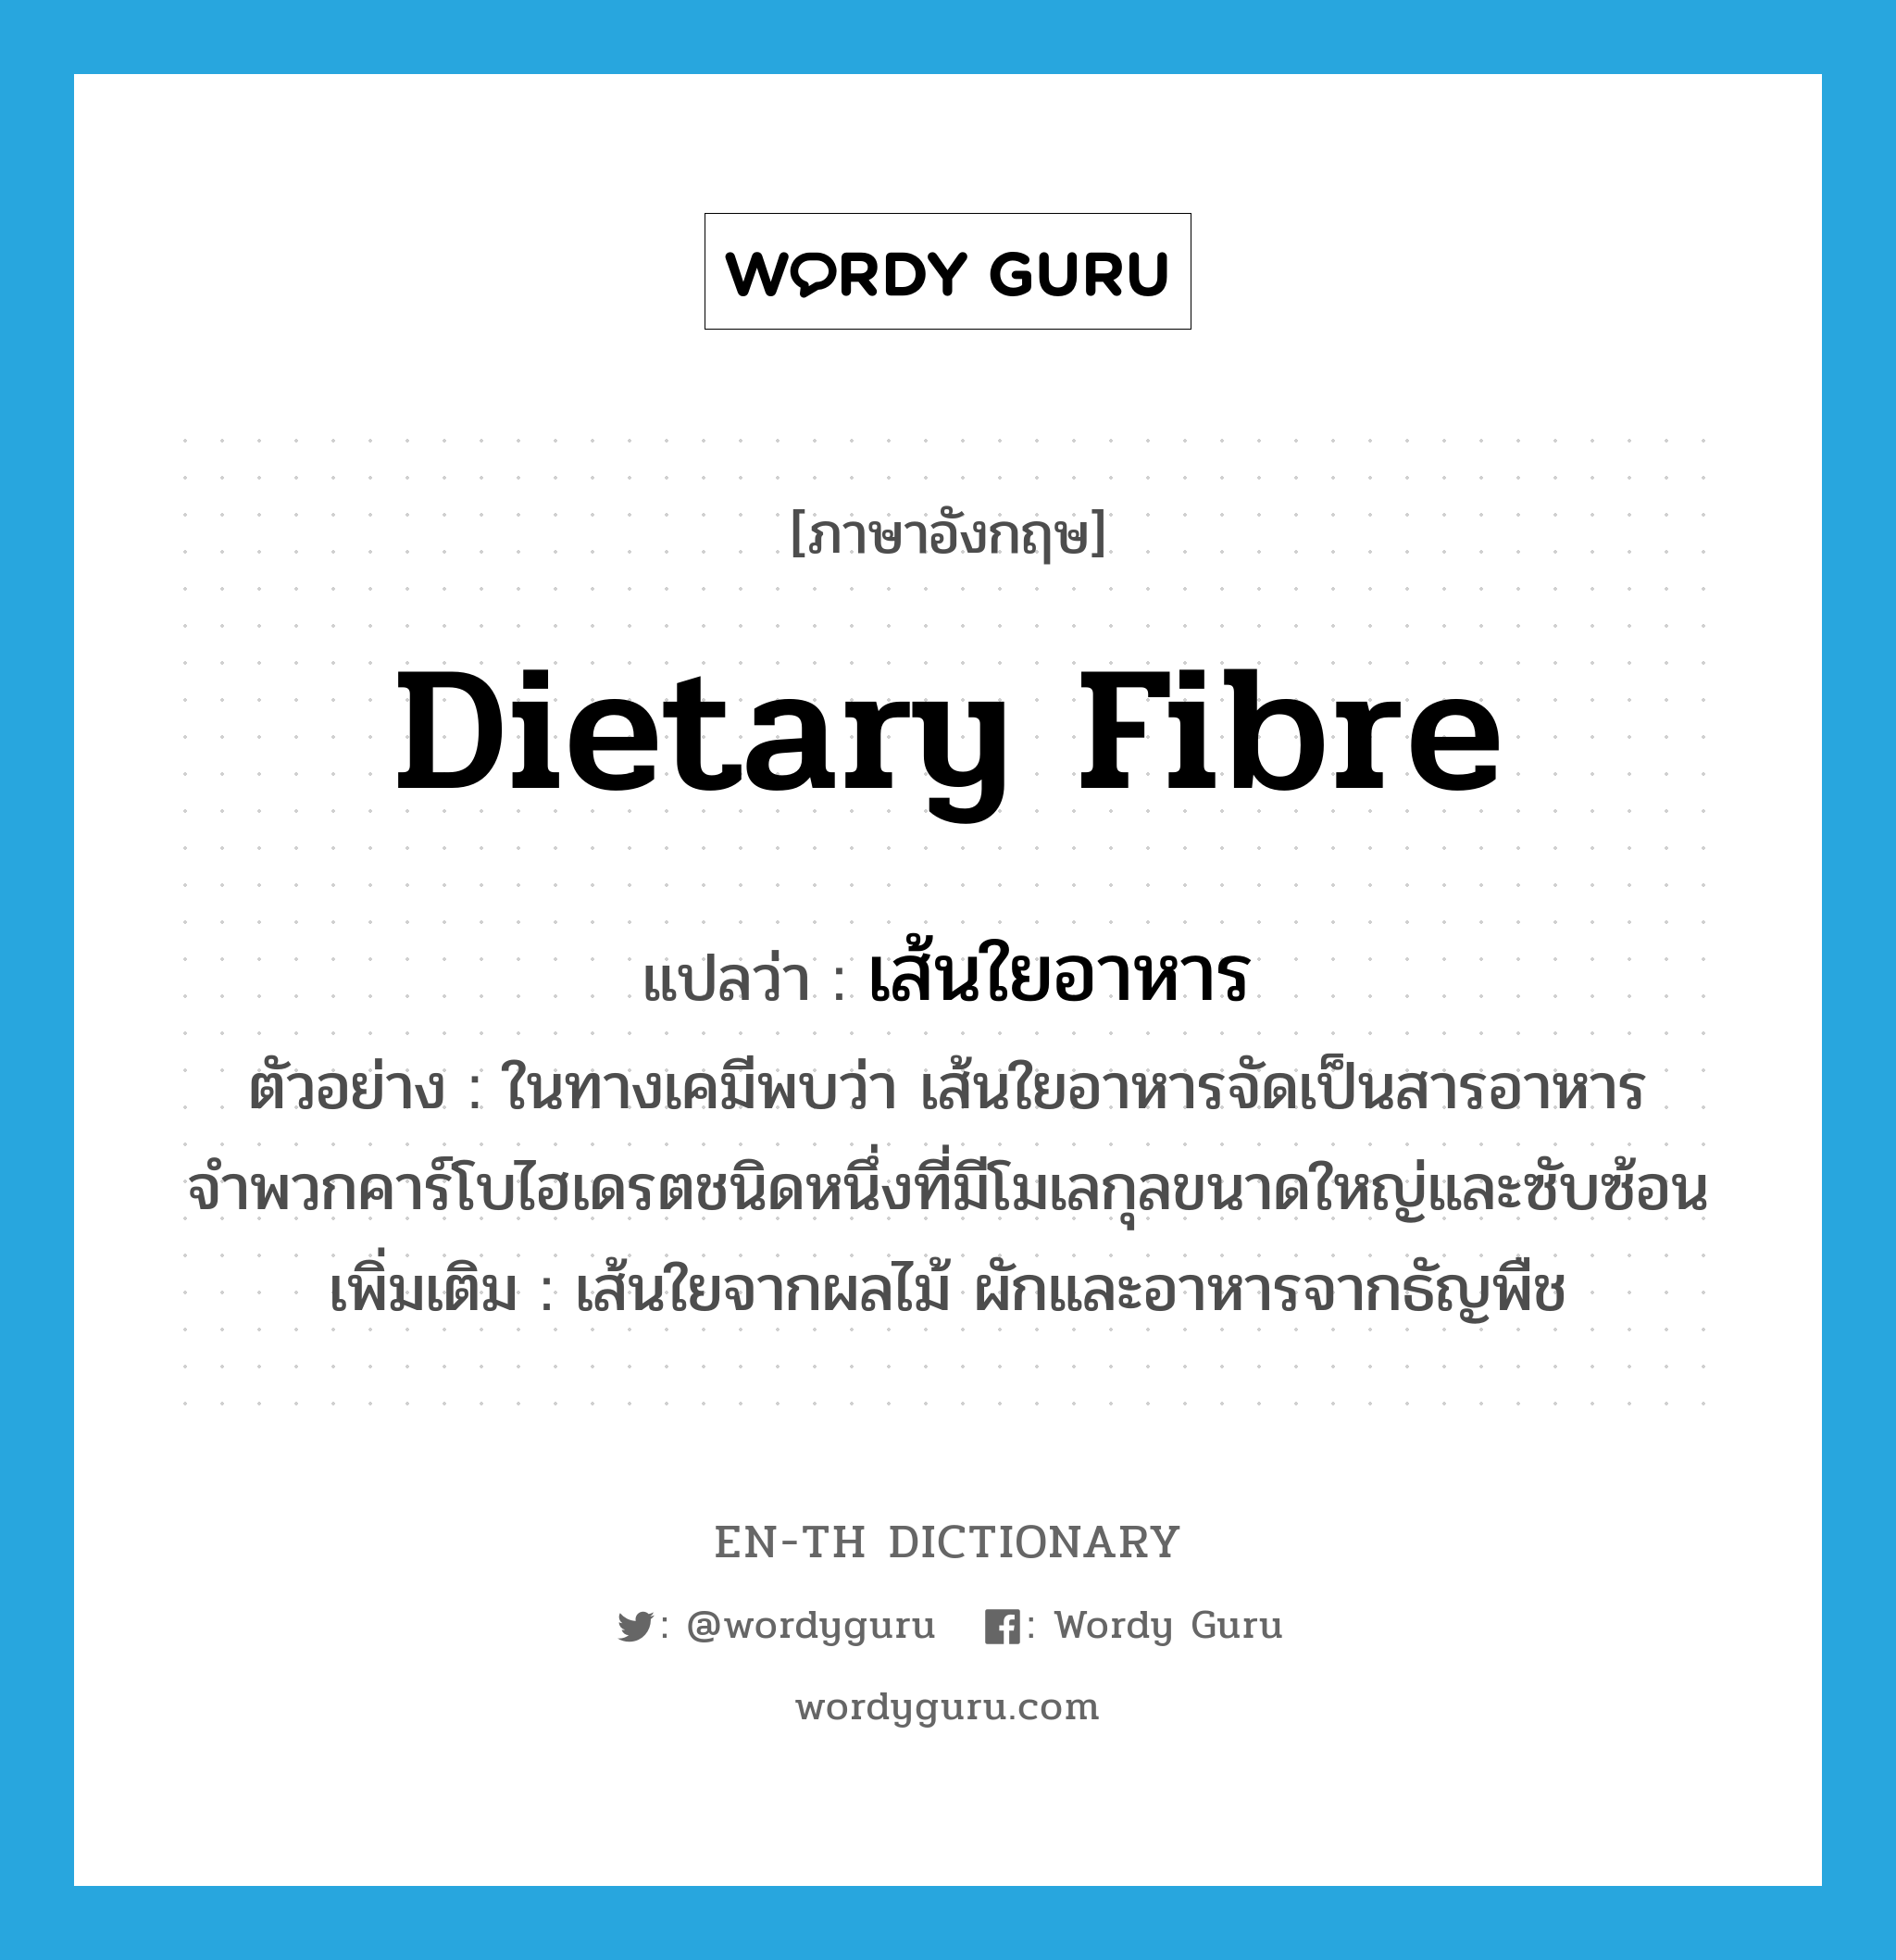 dietary fibre แปลว่า?, คำศัพท์ภาษาอังกฤษ dietary fibre แปลว่า เส้นใยอาหาร ประเภท N ตัวอย่าง ในทางเคมีพบว่า เส้นใยอาหารจัดเป็นสารอาหารจำพวกคาร์โบไฮเดรตชนิดหนึ่งที่มีโมเลกุลขนาดใหญ่และซับซ้อน เพิ่มเติม เส้นใยจากผลไม้ ผักและอาหารจากธัญพืช หมวด N